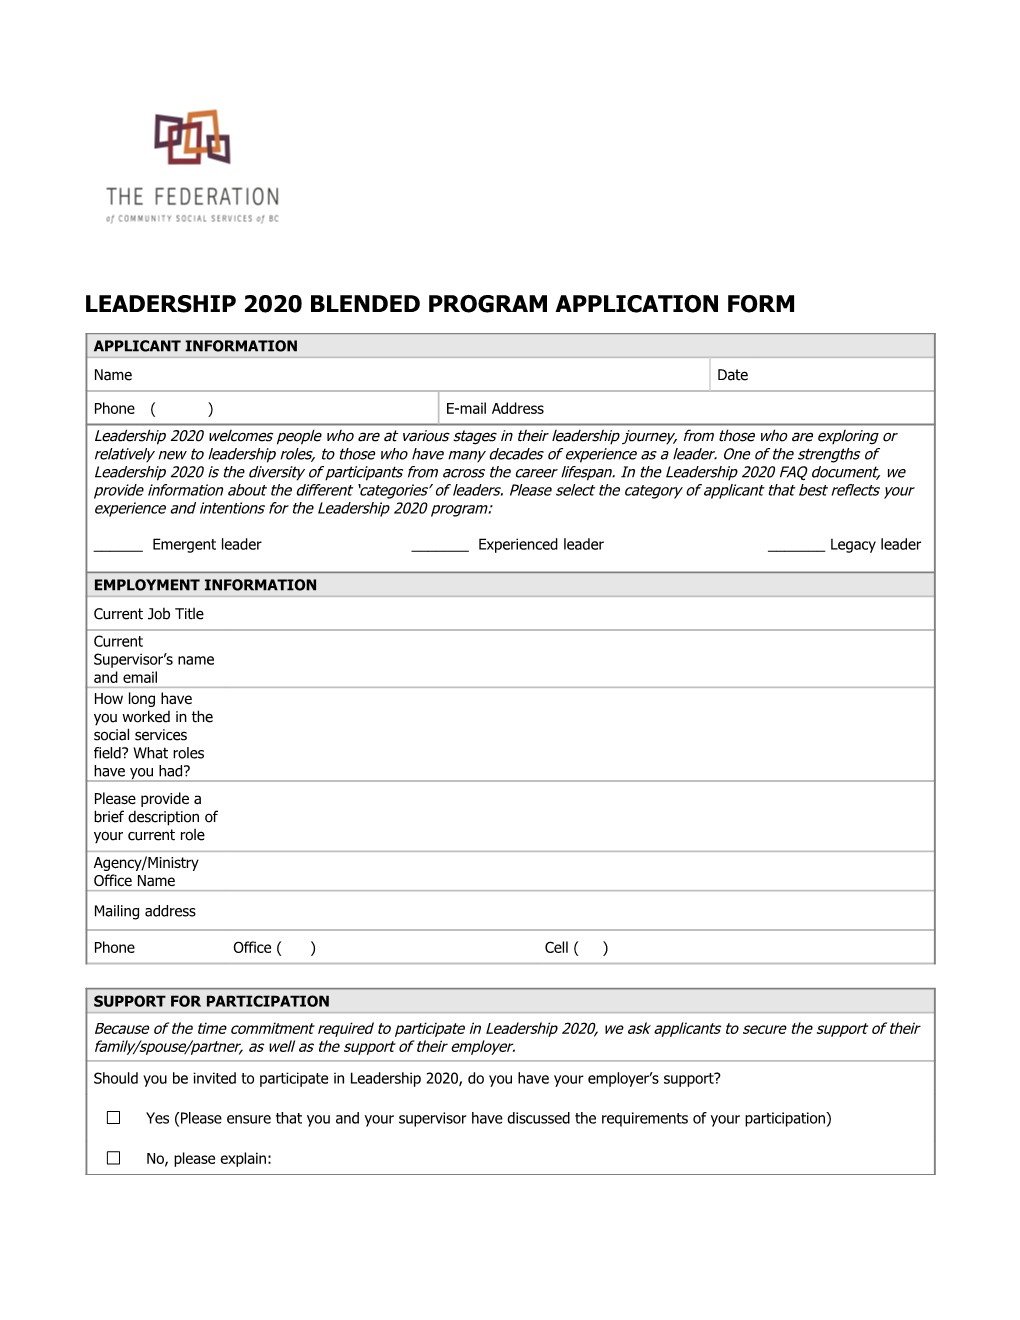 Leadership 2020 Blended Program Application Form